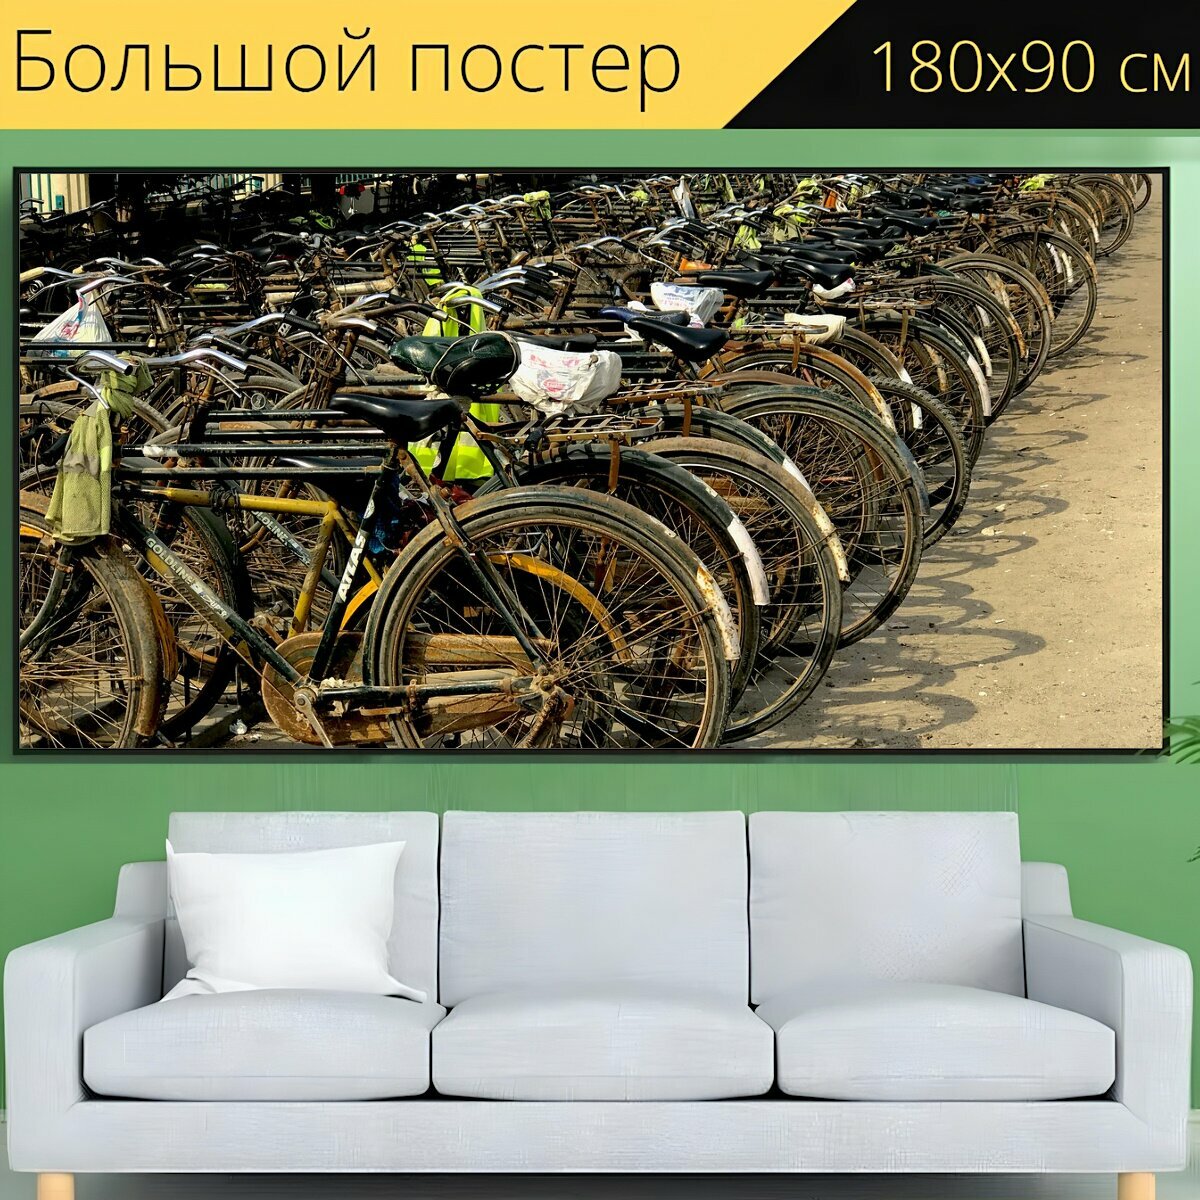 Большой постер "Транспорт, кататься на велосипеде, велосипед" 180 x 90 см. для интерьера